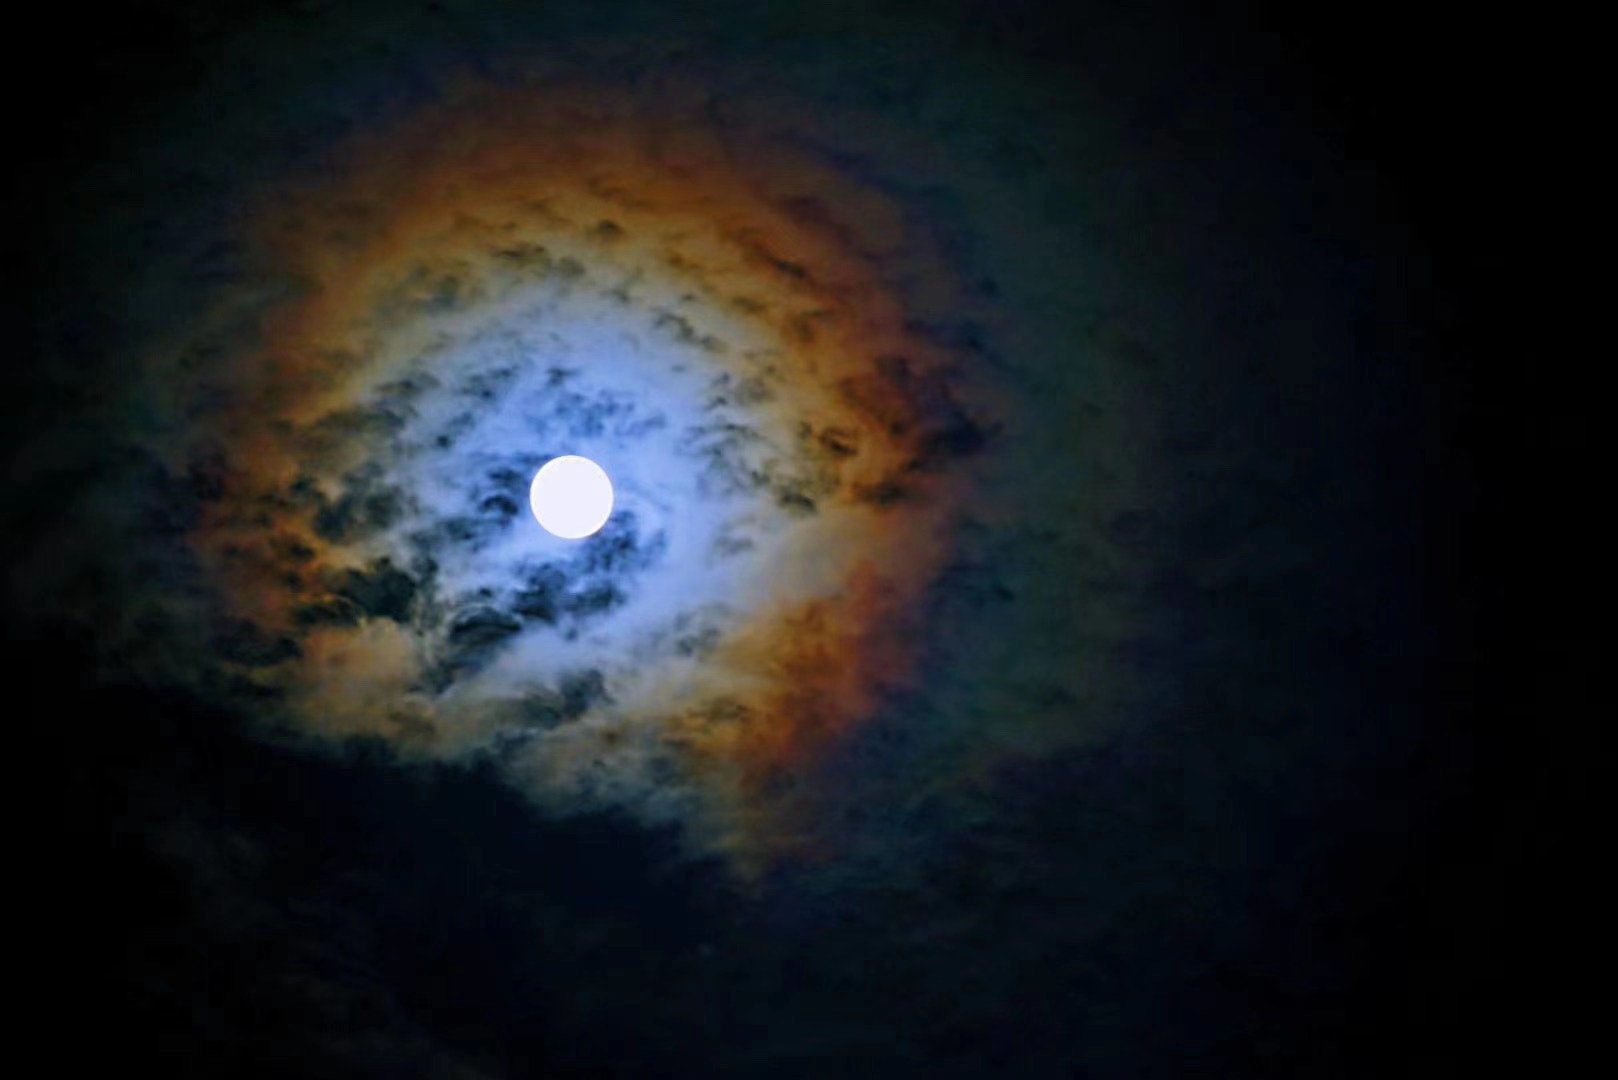 今晚月色真美十五的月亮十六圆你被拍月亮大赛刷屏了吗